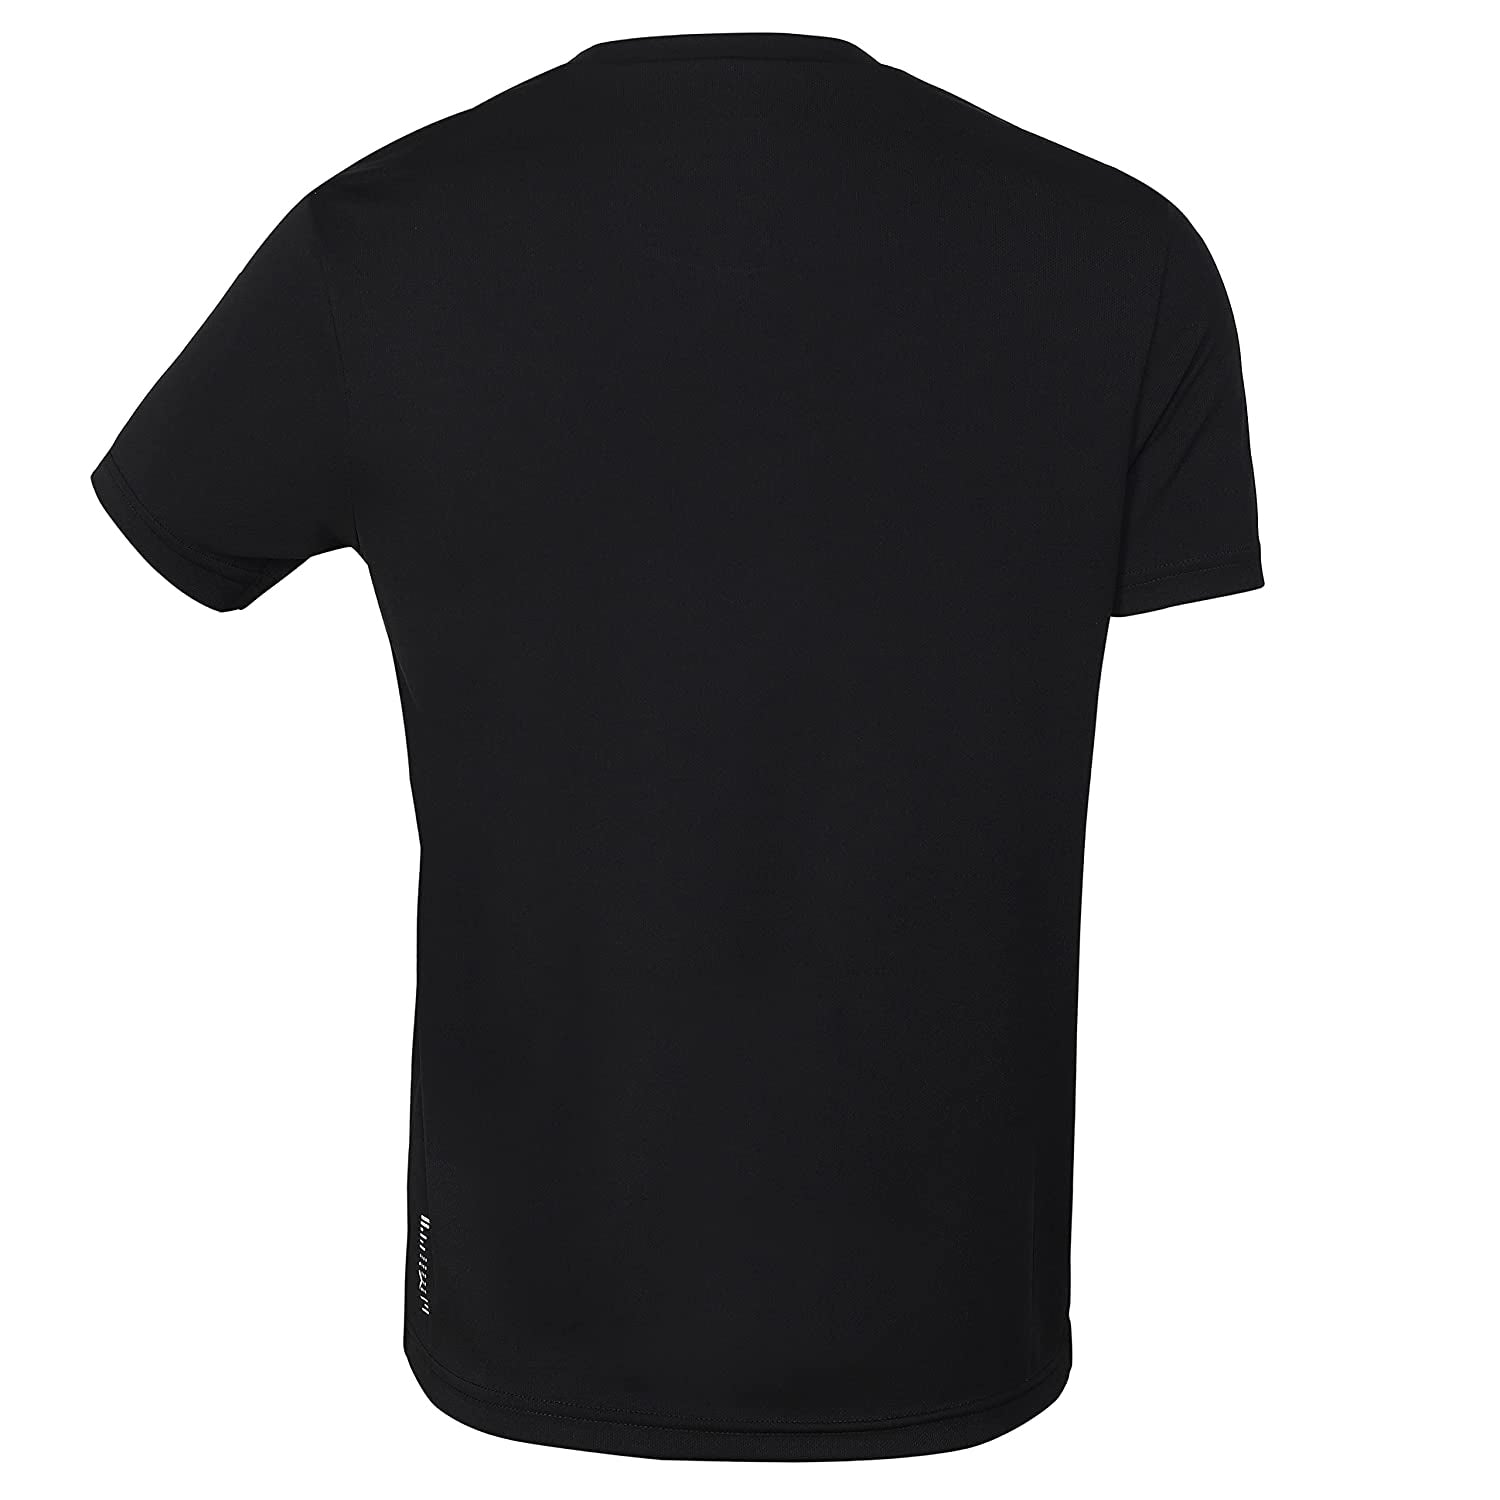 Yonex 2315 Easy22 Junior Round Neck T-Shirt - Best Price online Prokicksports.com